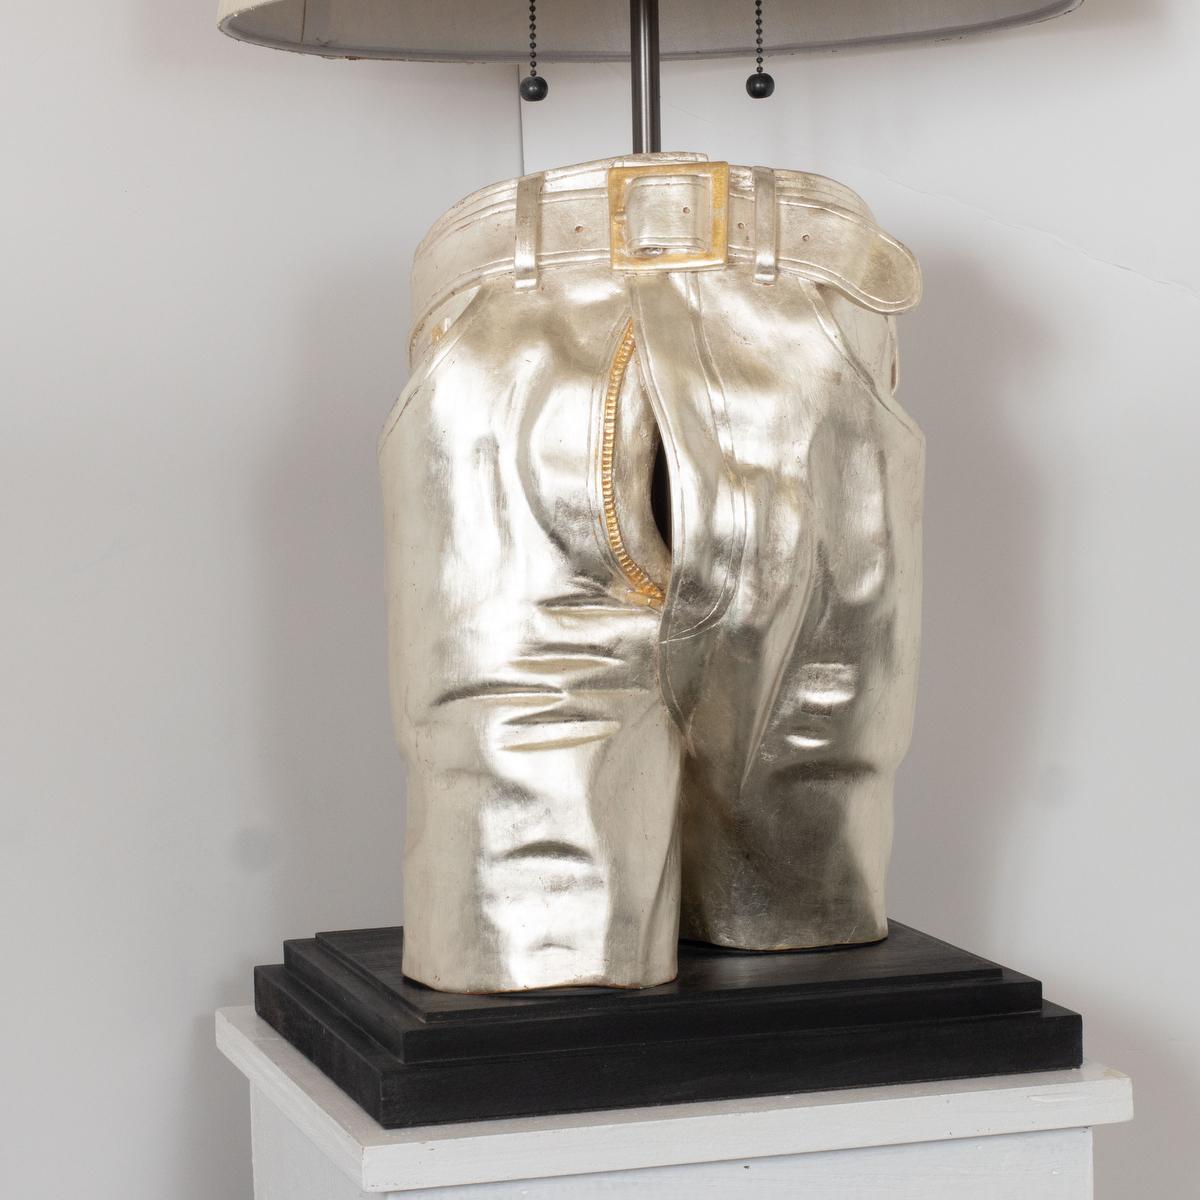 Lampe de table unique sculptée dans le bois avec une finition en or blanc représentant une paire de jeans dans des détails exquis par le maître ébéniste Carlos Villegas.